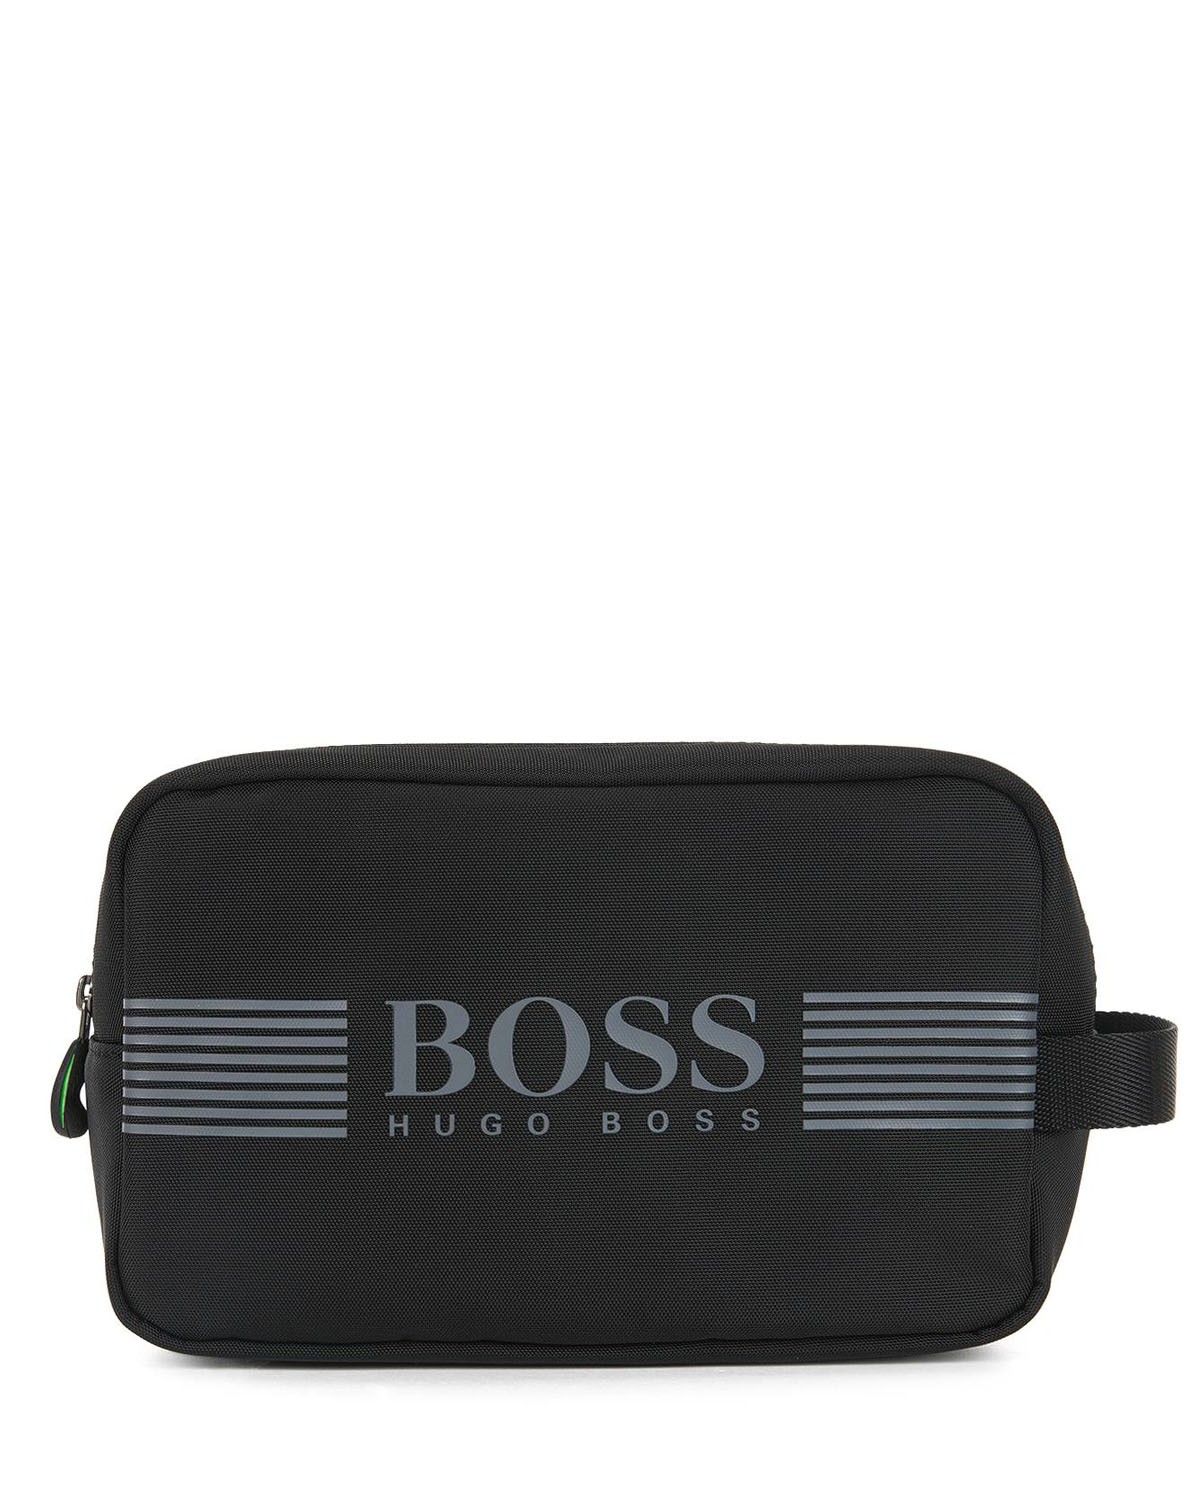 Black Hugo Boss Toiletry Bag | Speak4urself